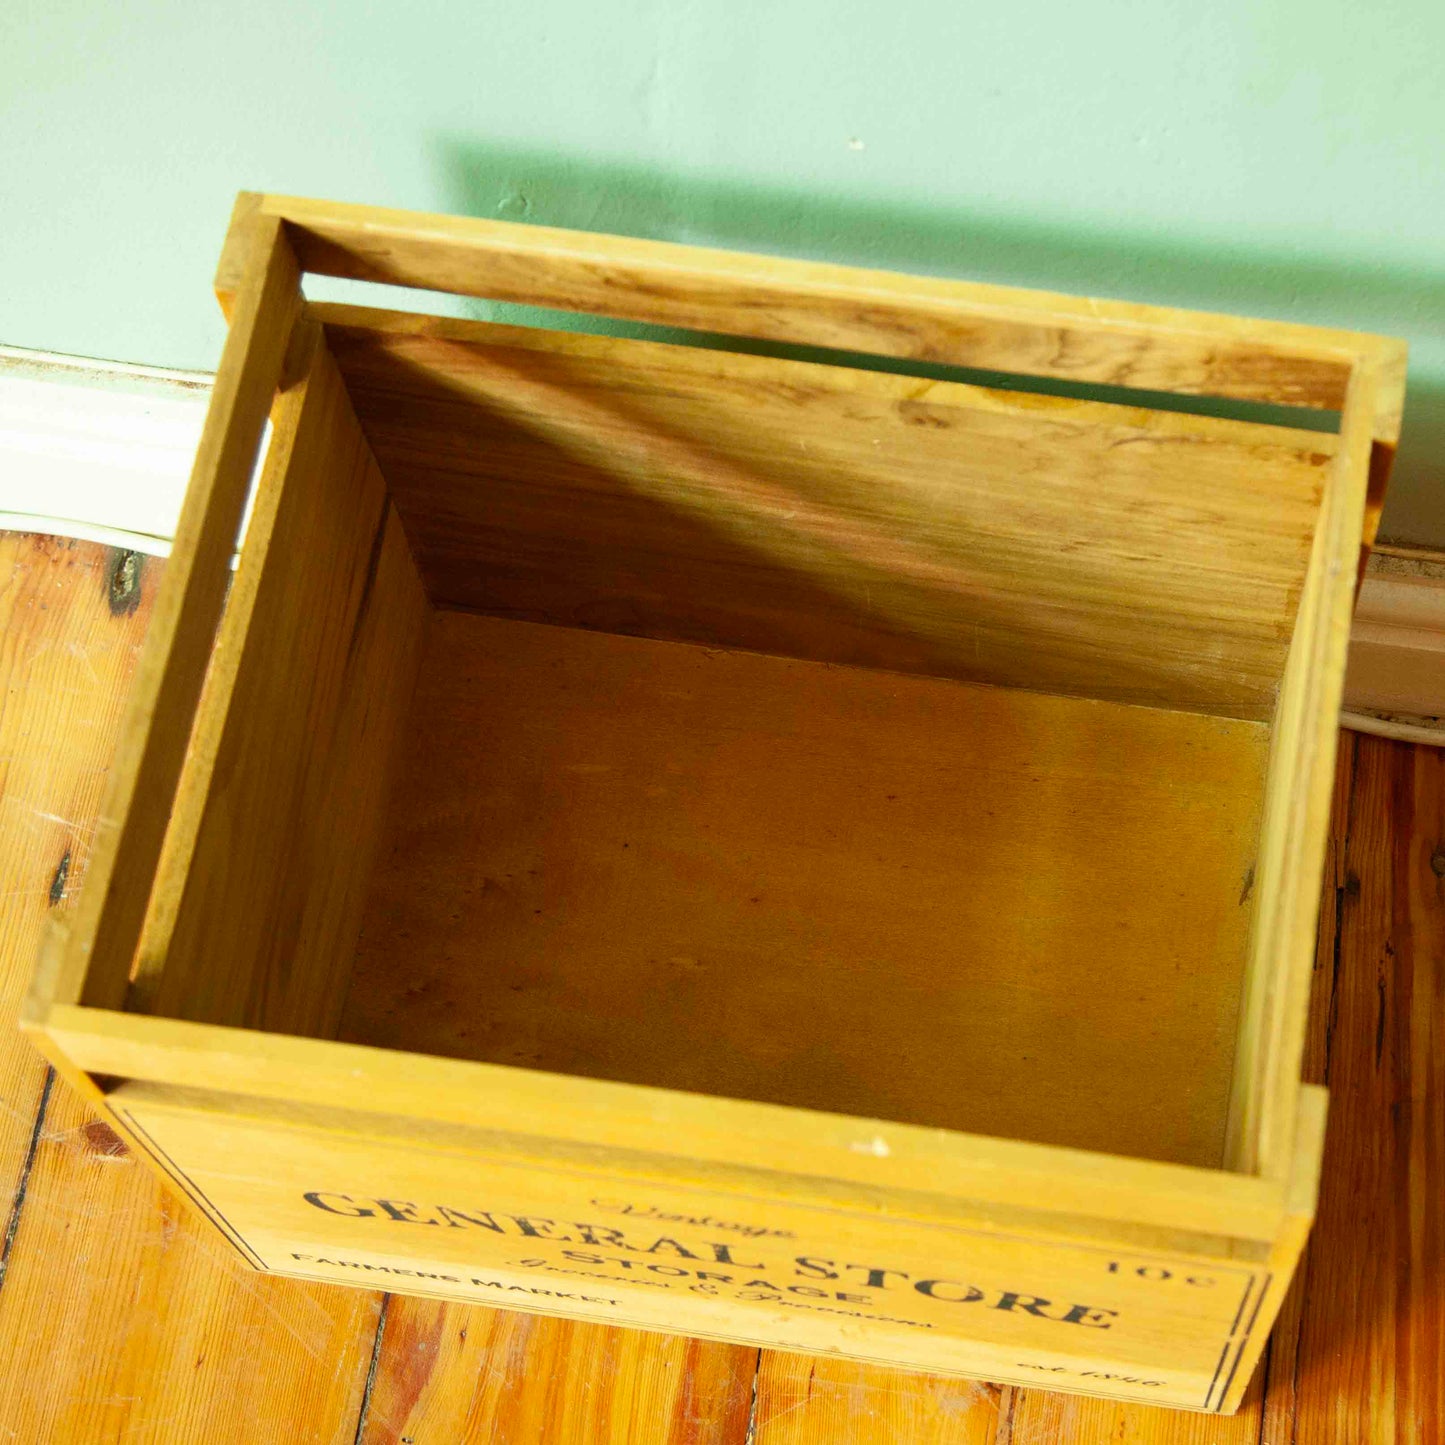 Wooden storage crate